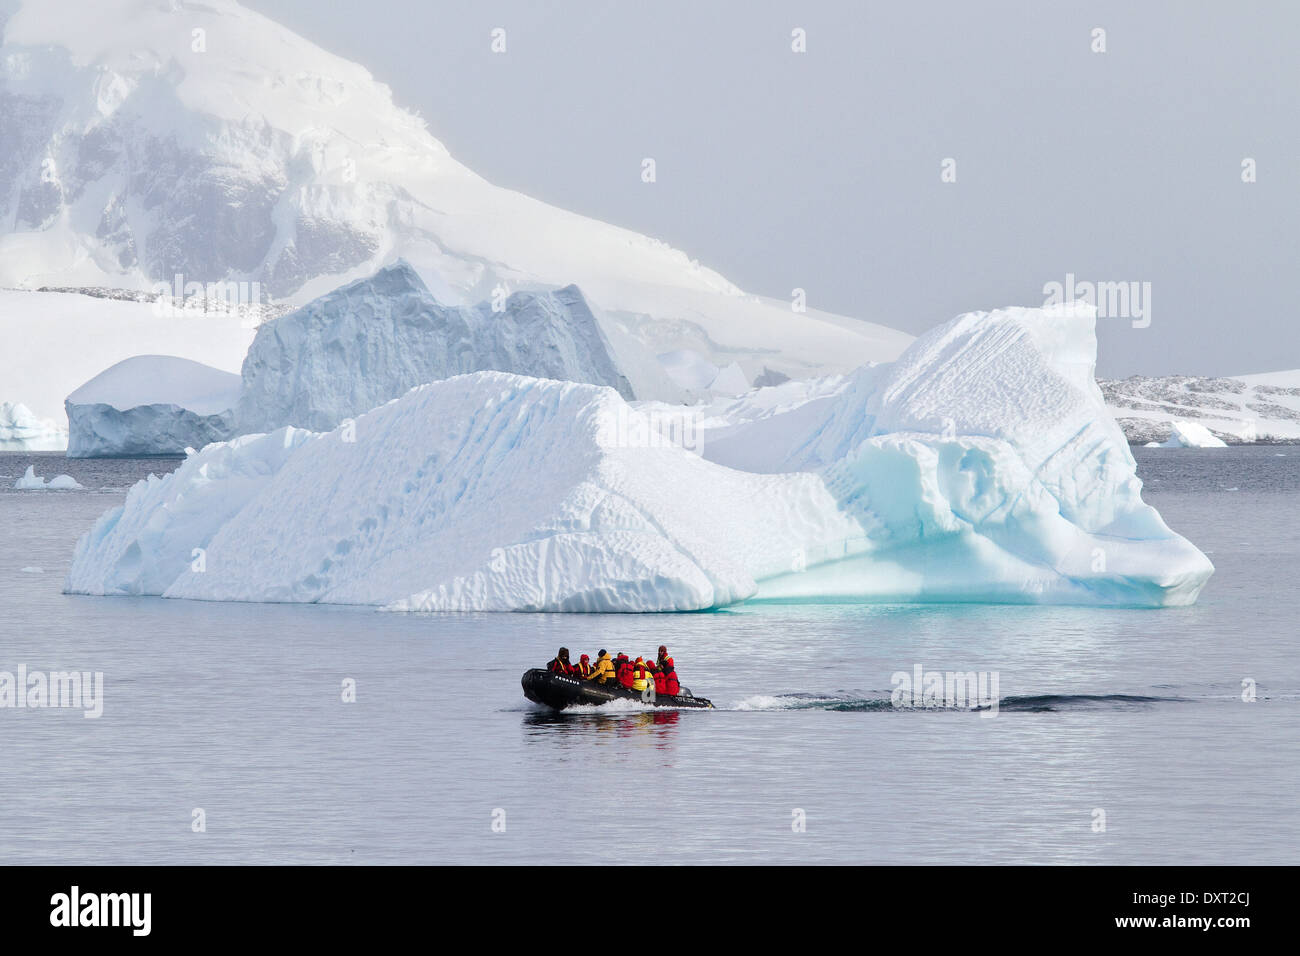 L'antarctique le tourisme de croisière parmi les paysages de glaciers, icebergs, Icebergs, glace et avec les touristes en zodiac. Péninsule antarctique. Banque D'Images